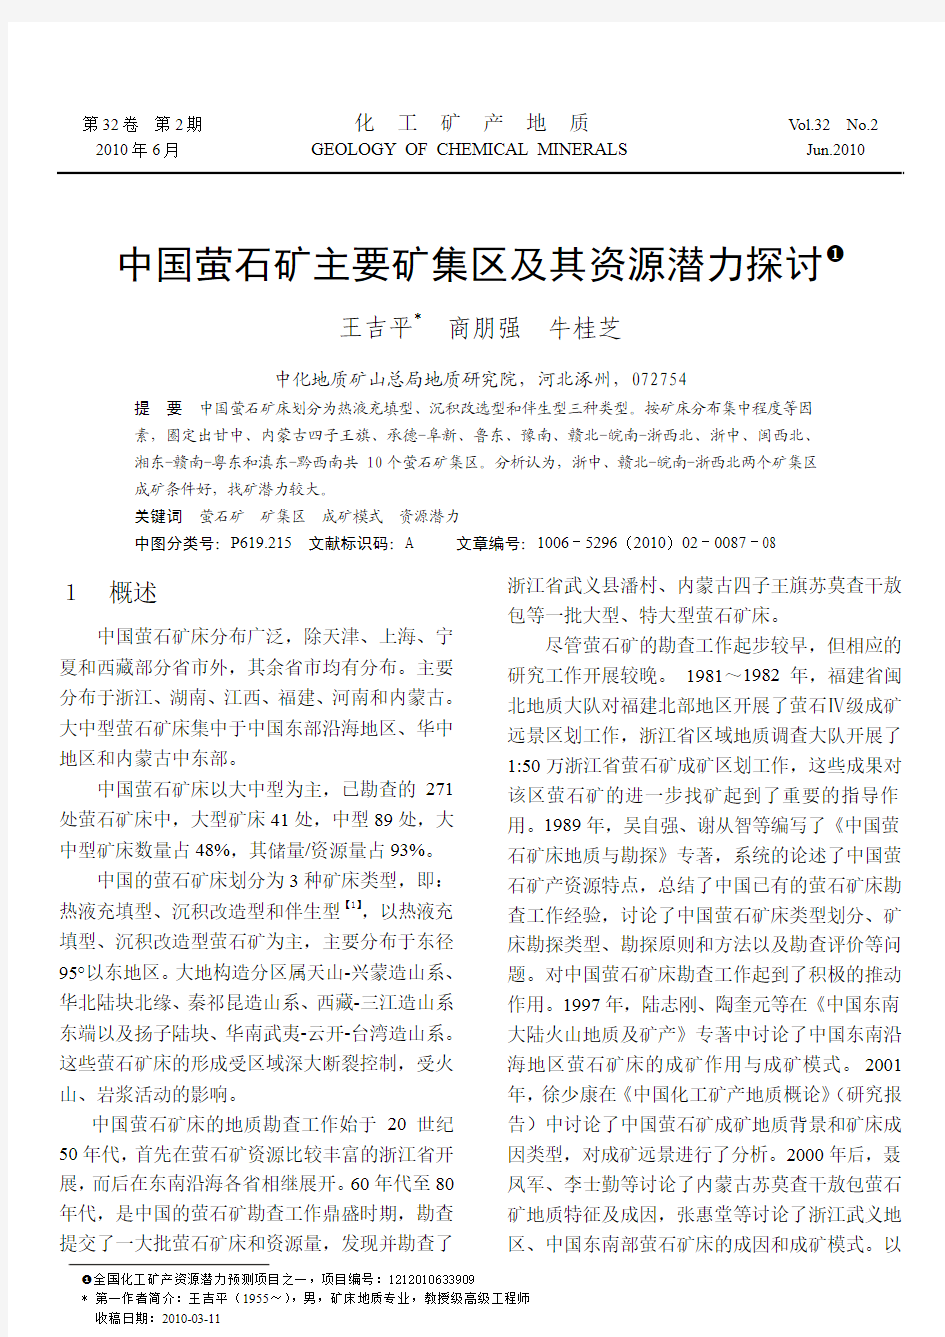 中国萤石矿主要矿集区及其资源潜力探讨_王吉平